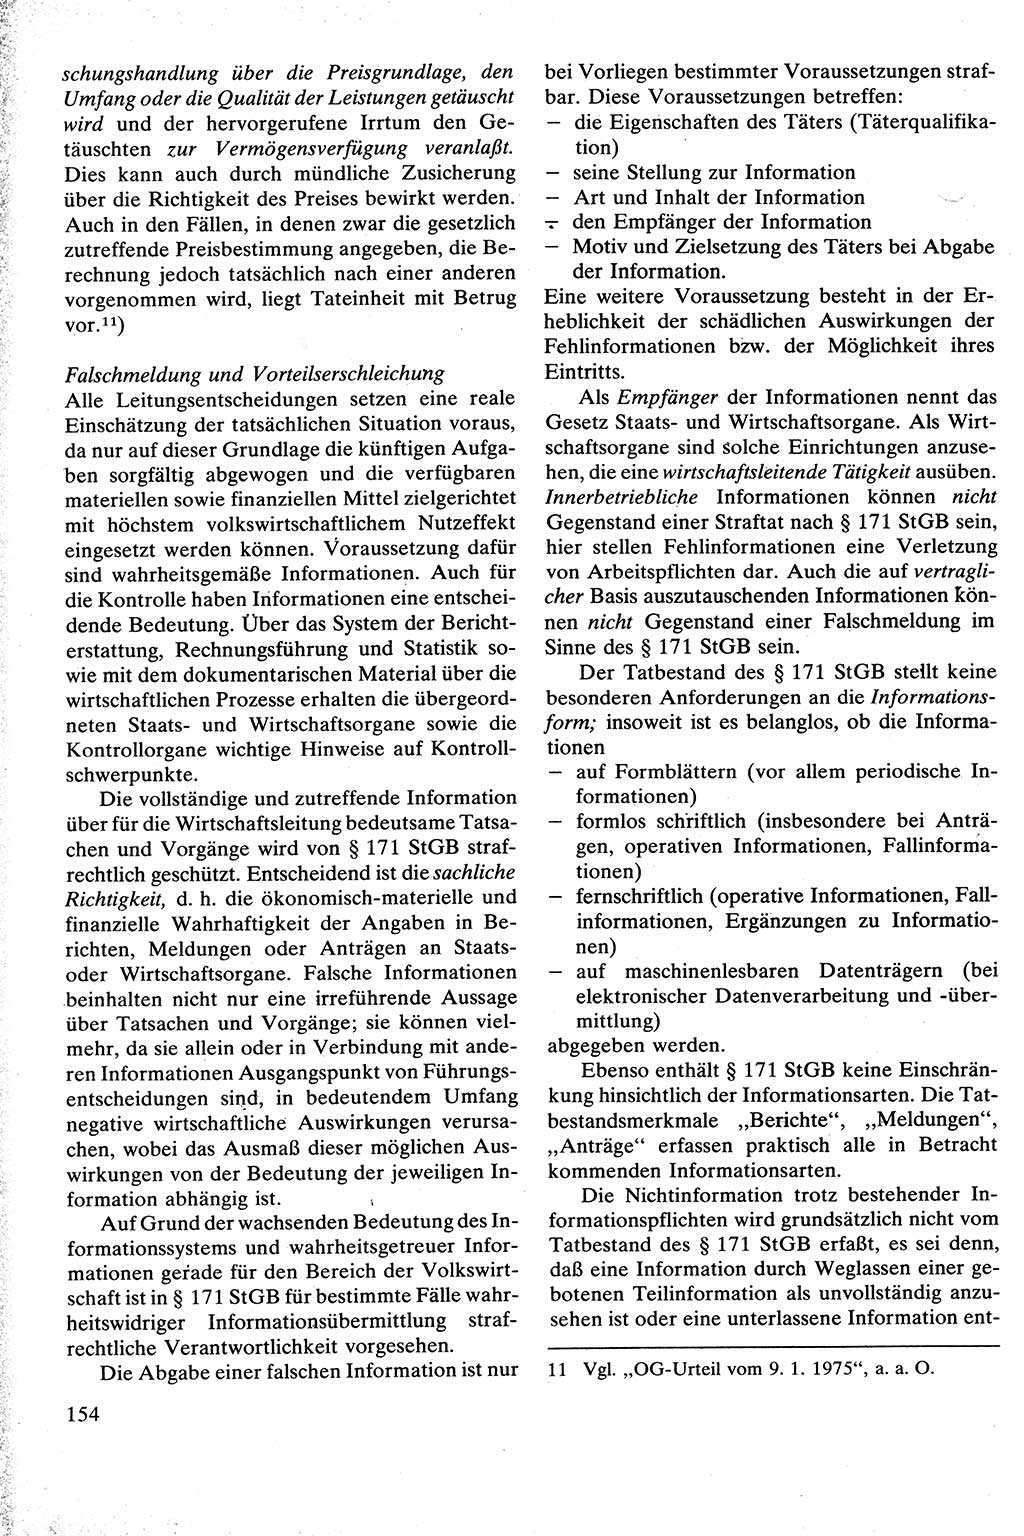 Strafrecht [Deutsche Demokratische Republik (DDR)], Besonderer Teil, Lehrbuch 1981, Seite 154 (Strafr. DDR BT Lb. 1981, S. 154)